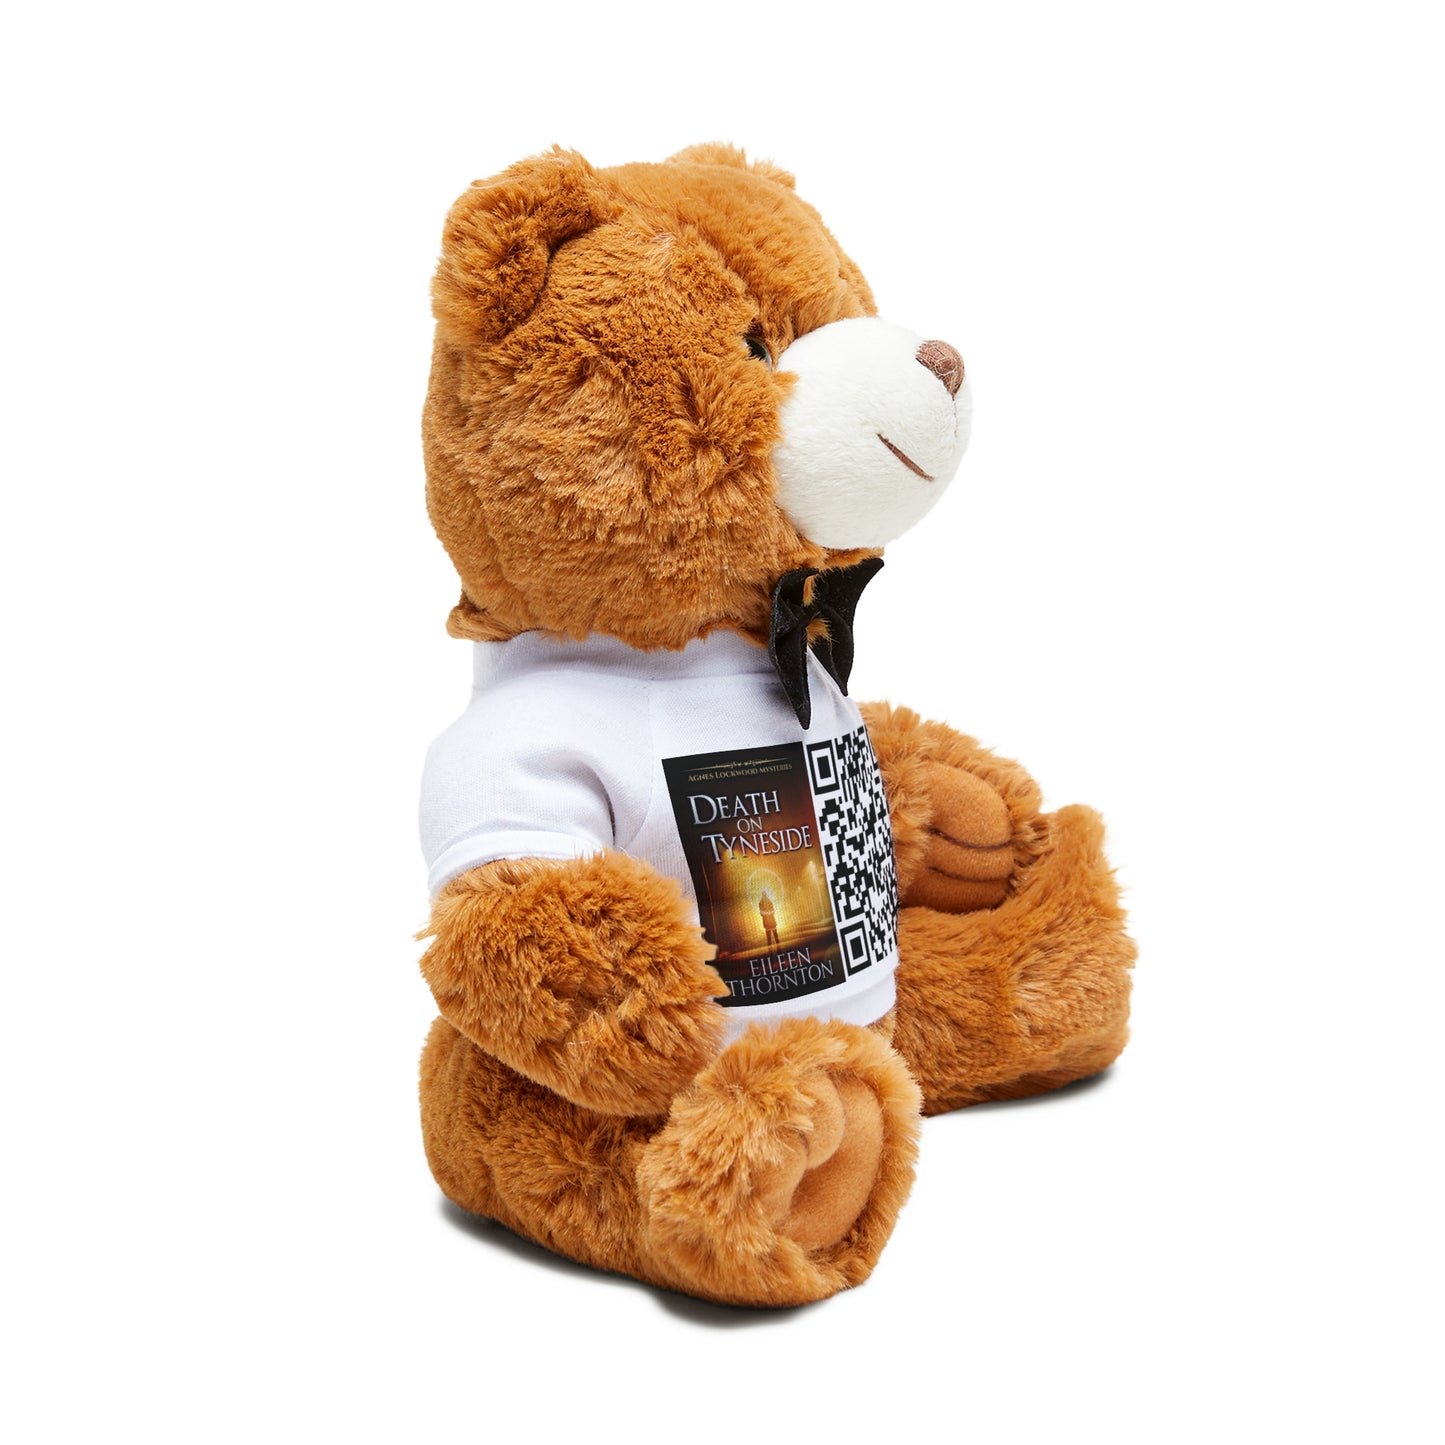 Death on Tyneside - Teddy Bear